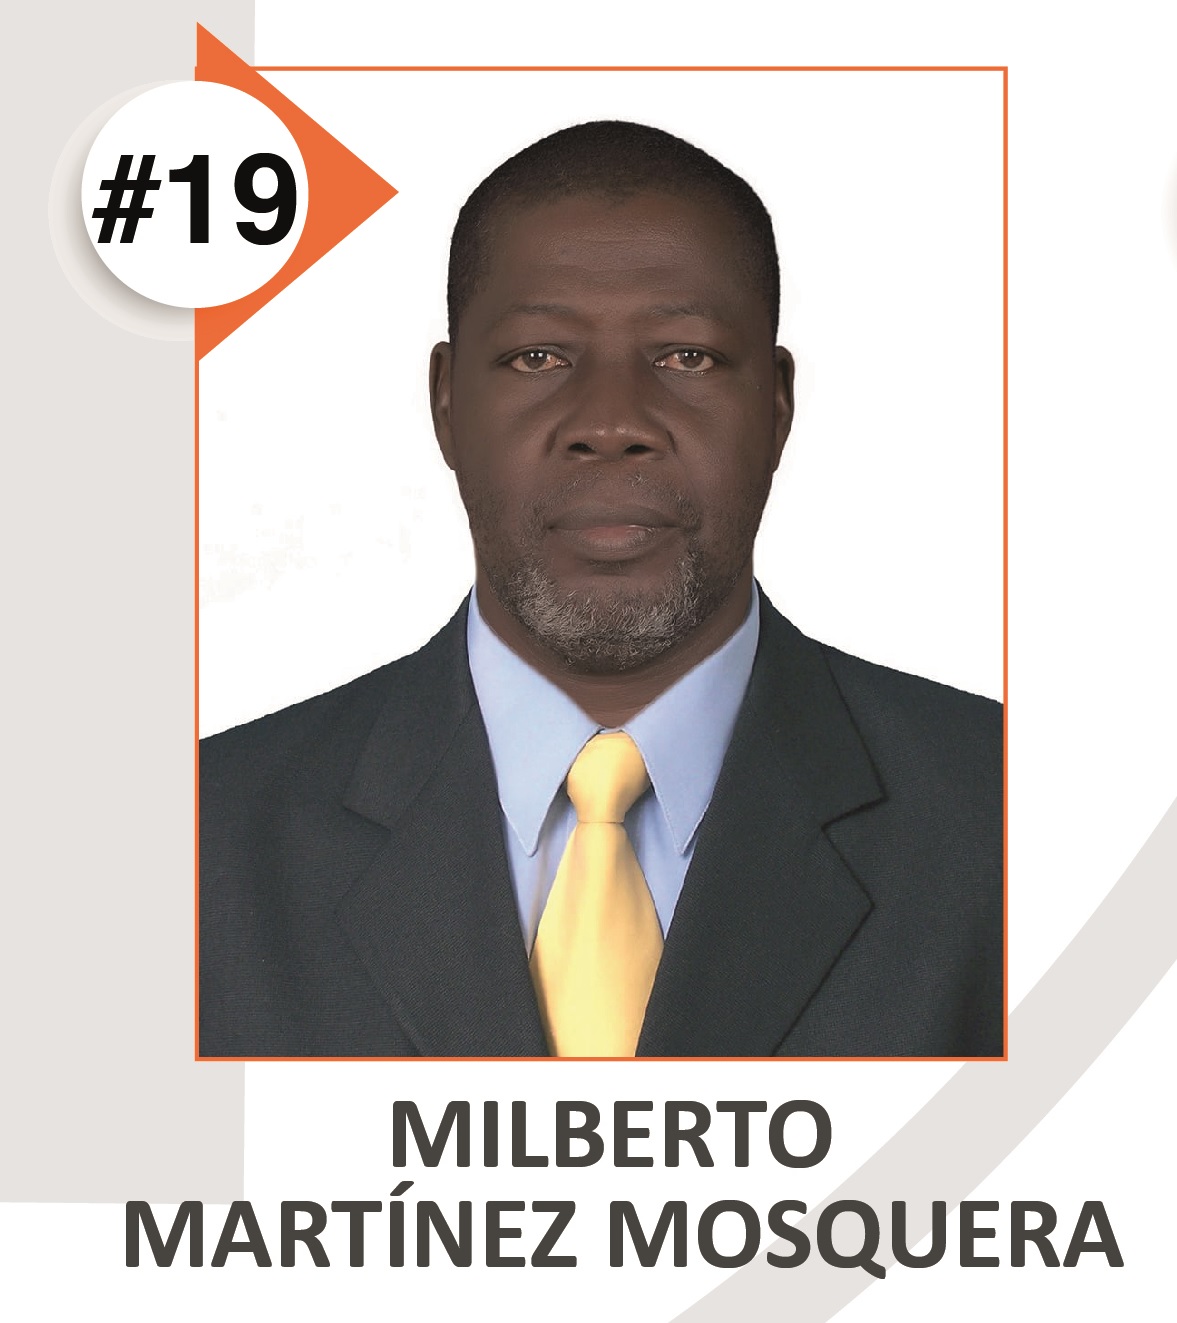 MILBERTO MARTINEZ